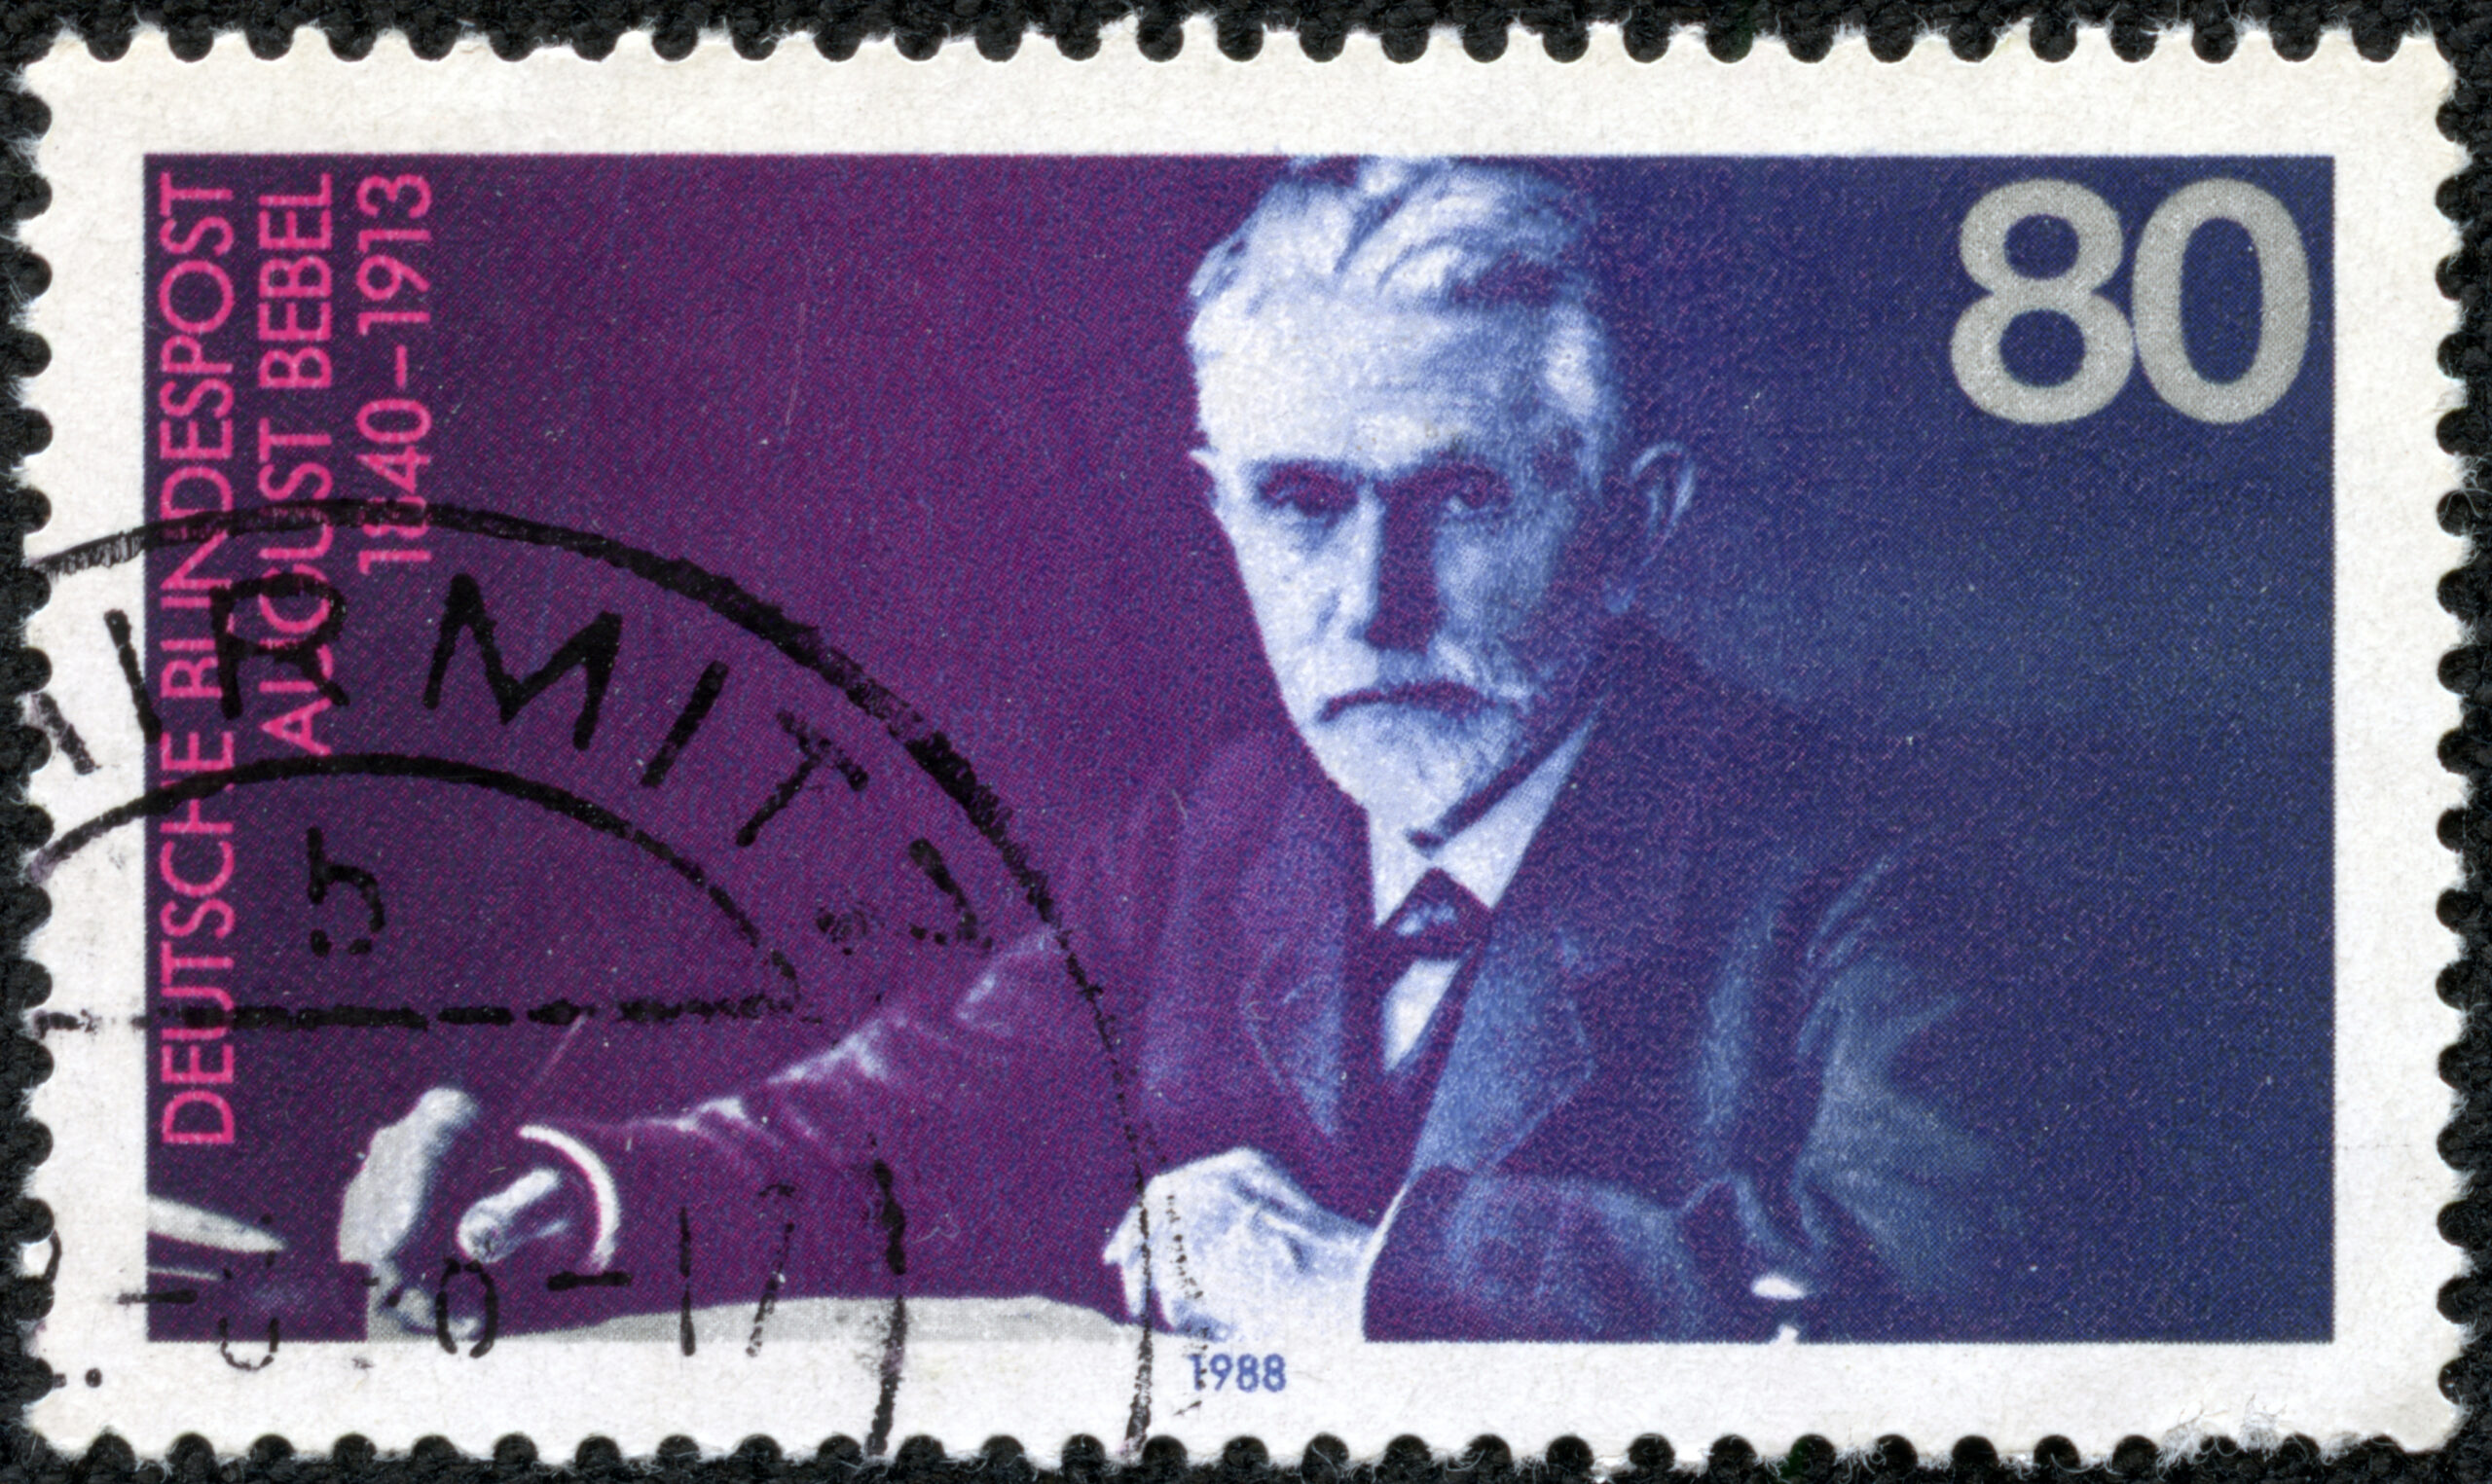 Der Sozialdemokrat August Bebel, dargestellt auf einer Briefmarke